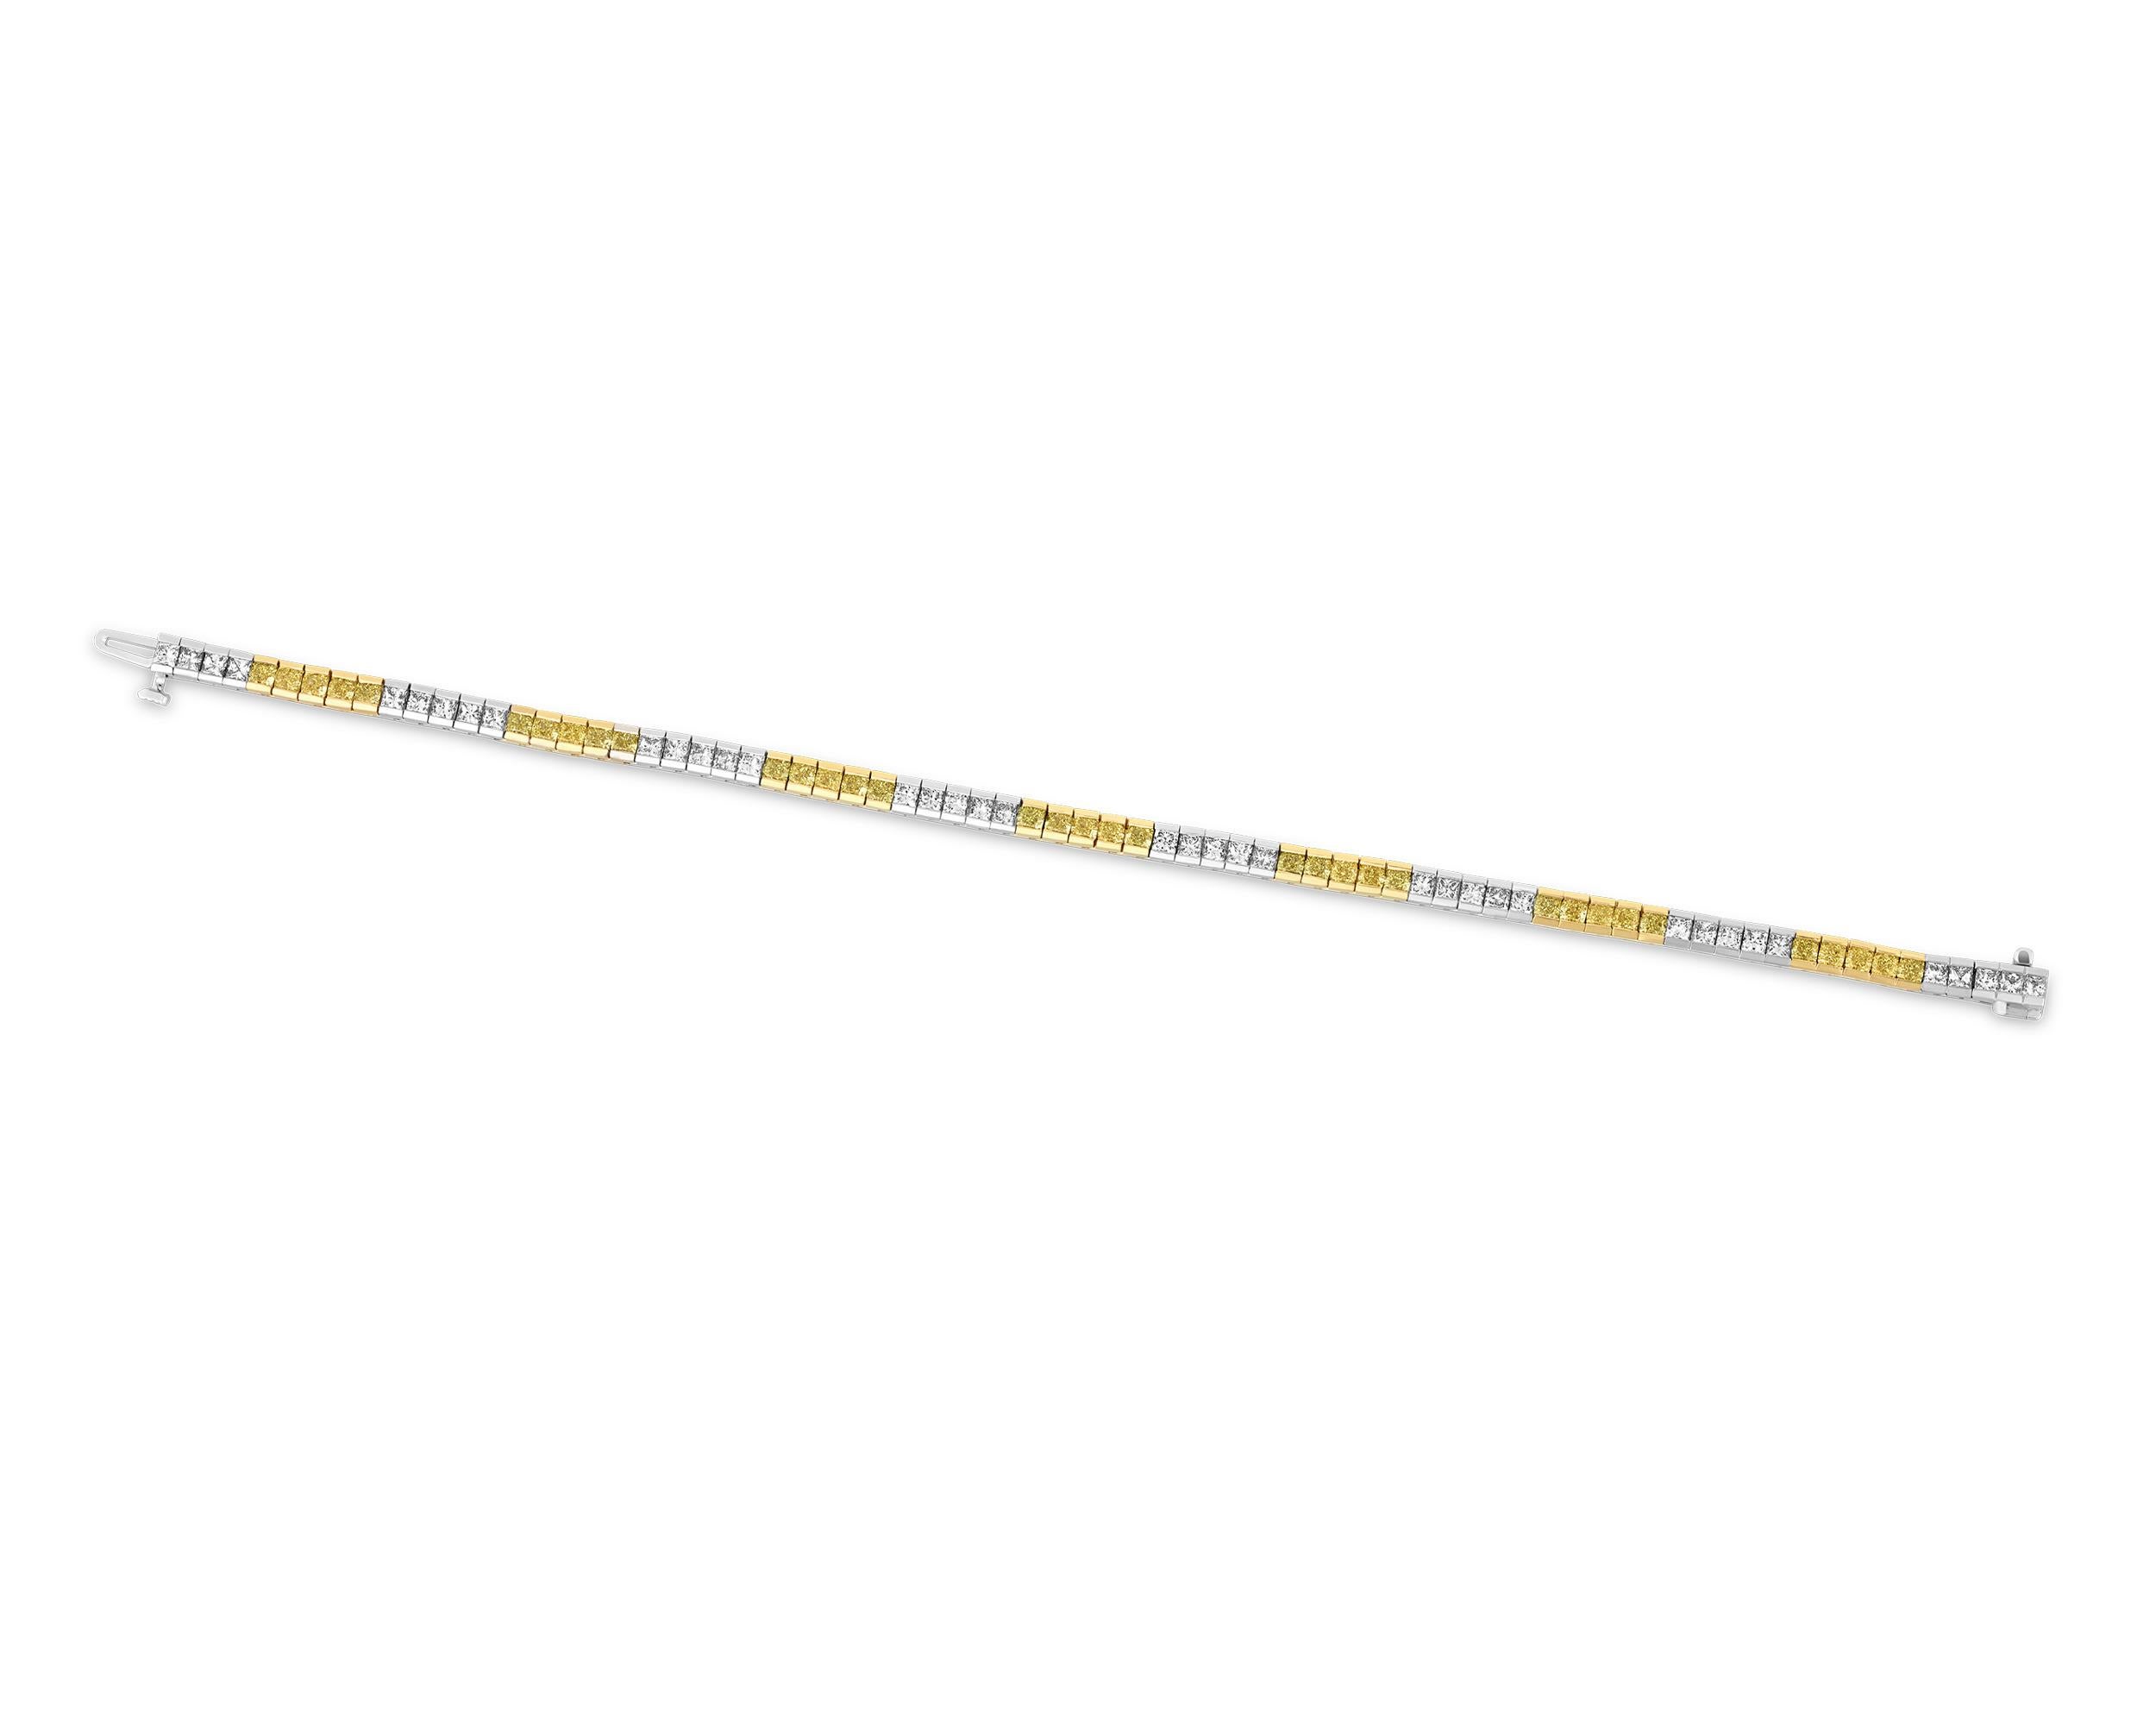 Dieses elegante und raffinierte Armband ist mit gelben und weißen Diamanten besetzt, die in einer eleganten geraden Linie angeordnet sind. Die fünfunddreißig gelben Diamanten haben insgesamt 3,80 Karat und die neununddreißig weißen Diamanten